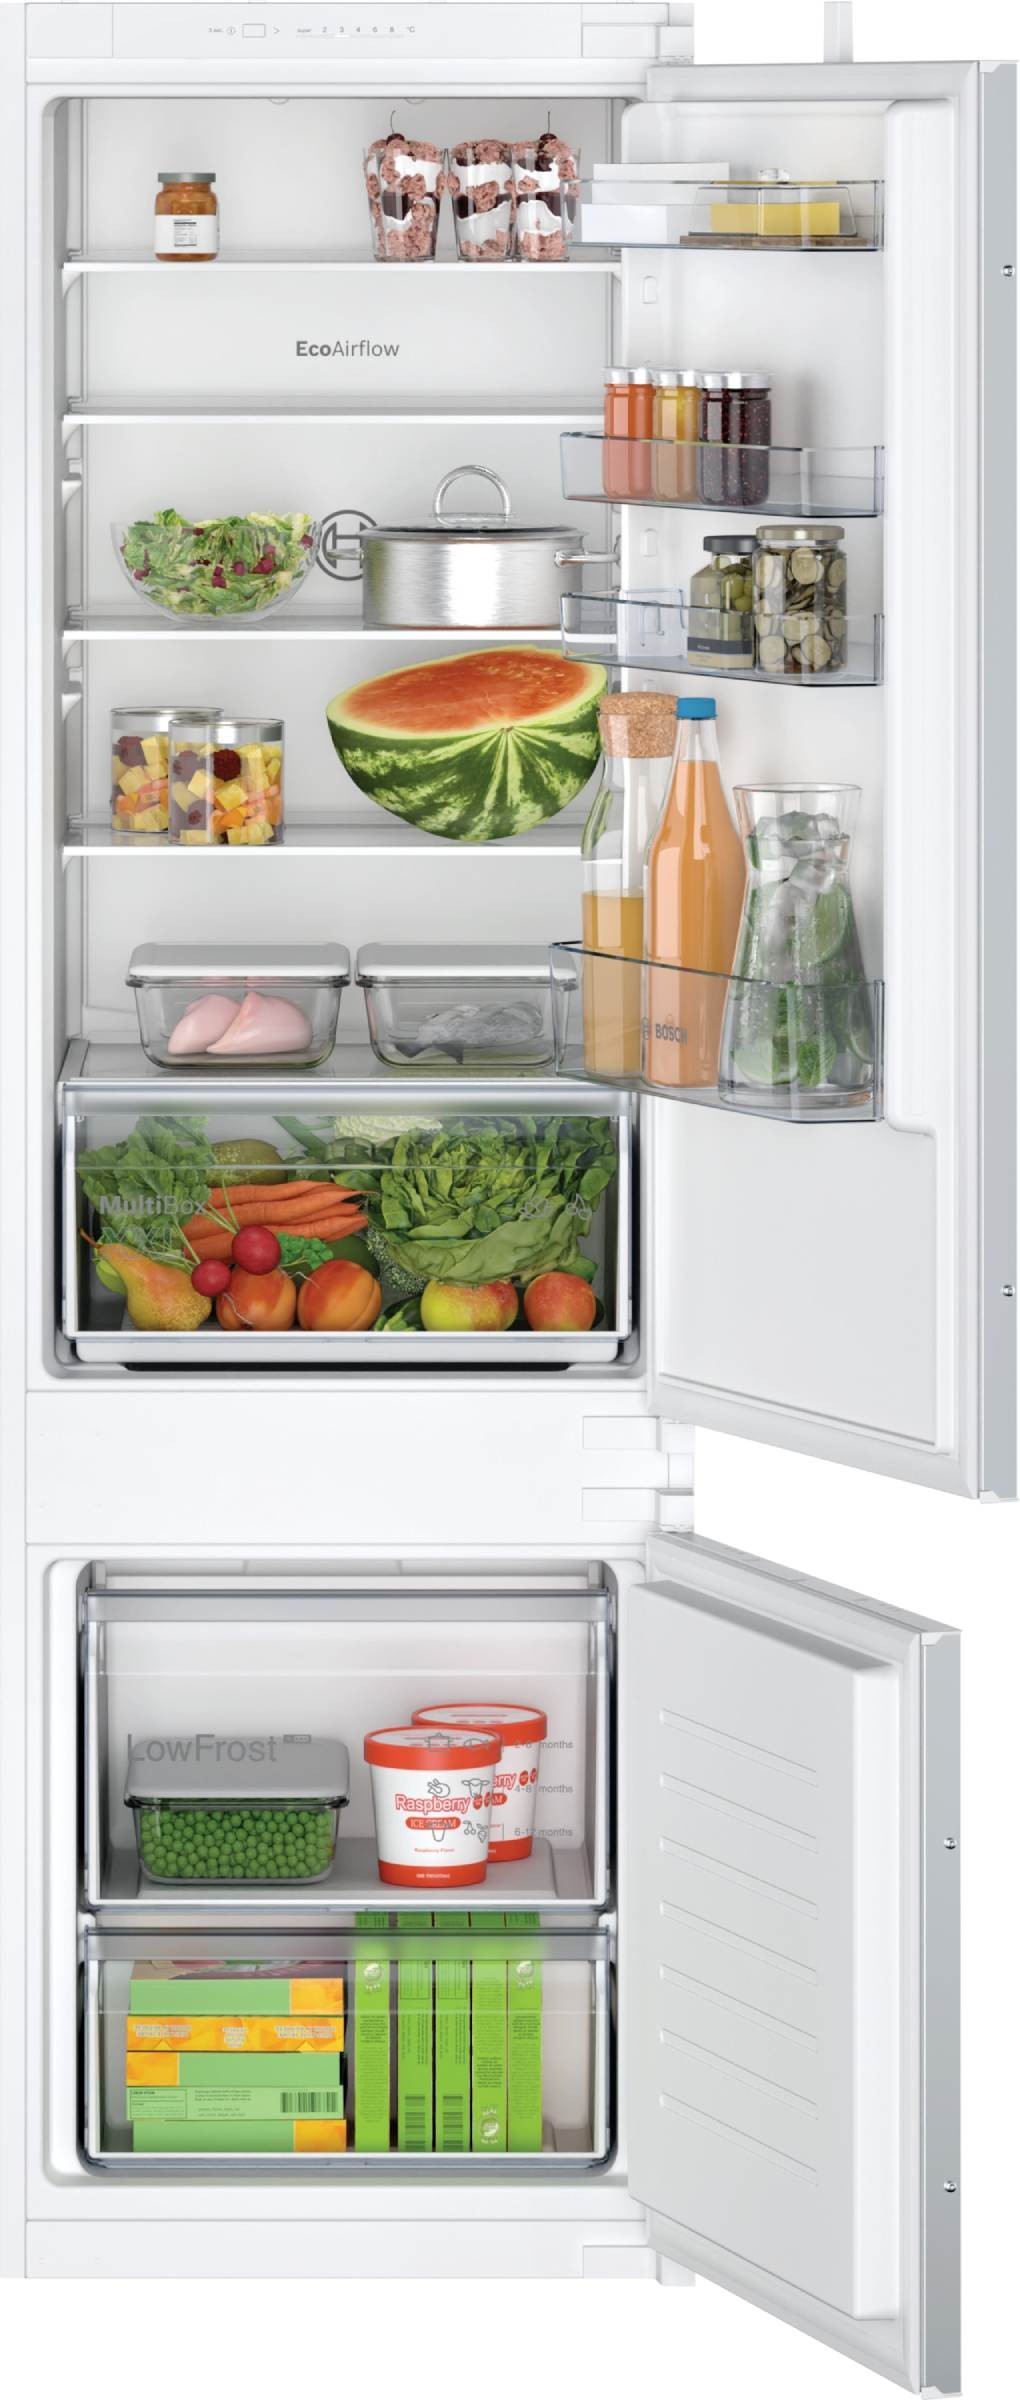 Réfrigérateur table top encastrable - Lfb3af82r - Réfrigérateur 1 porte BUT